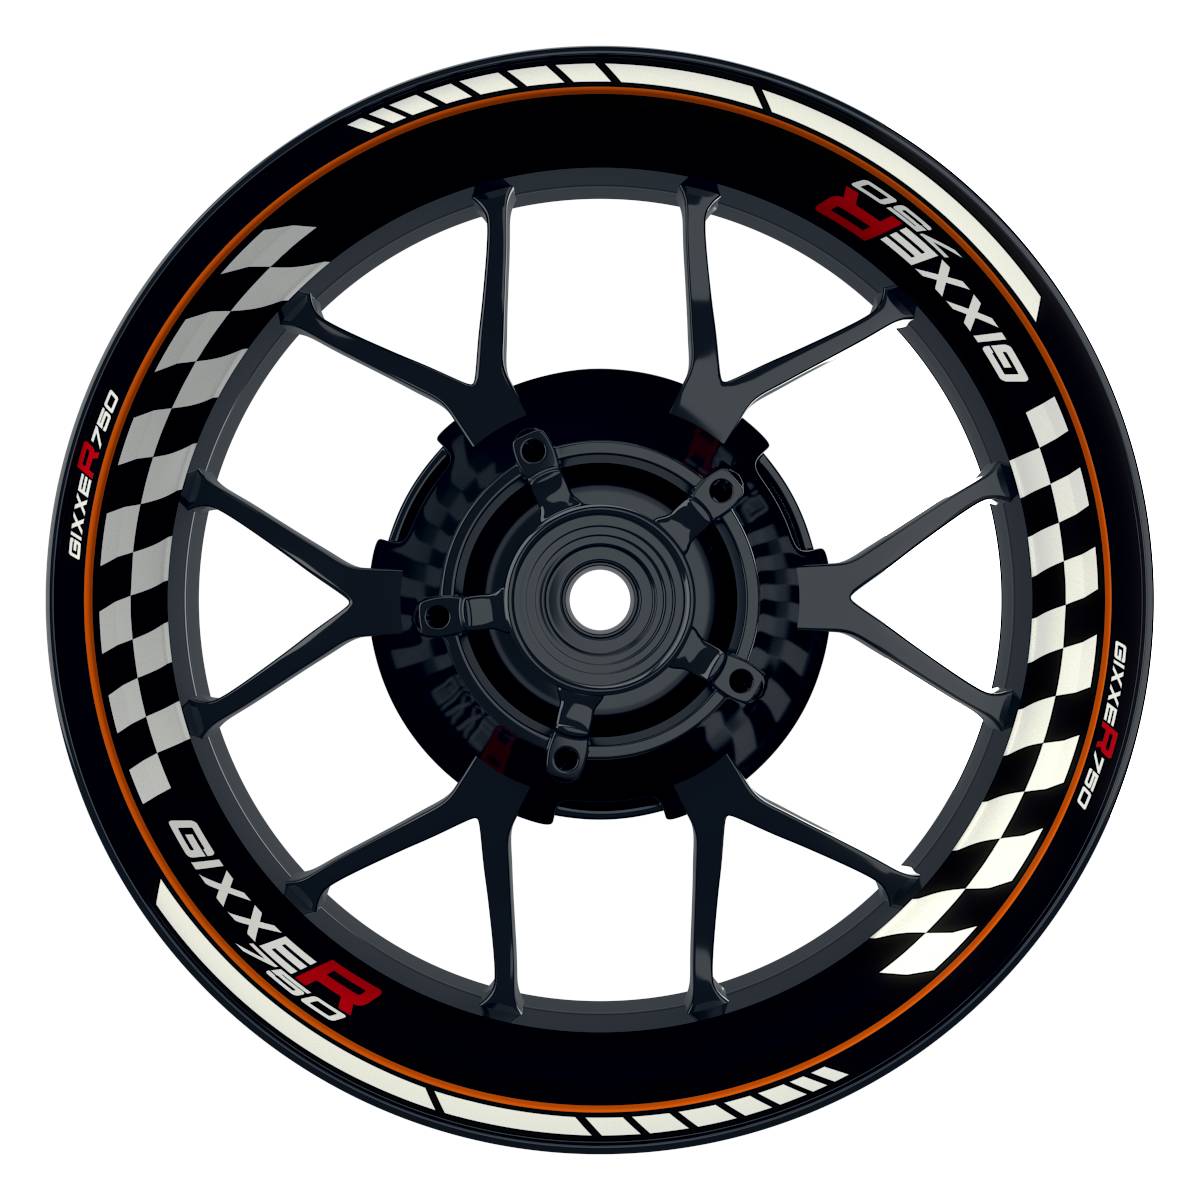 GIXXER750 Grid schwarz orange Wheelsticker Felgenaufkleber